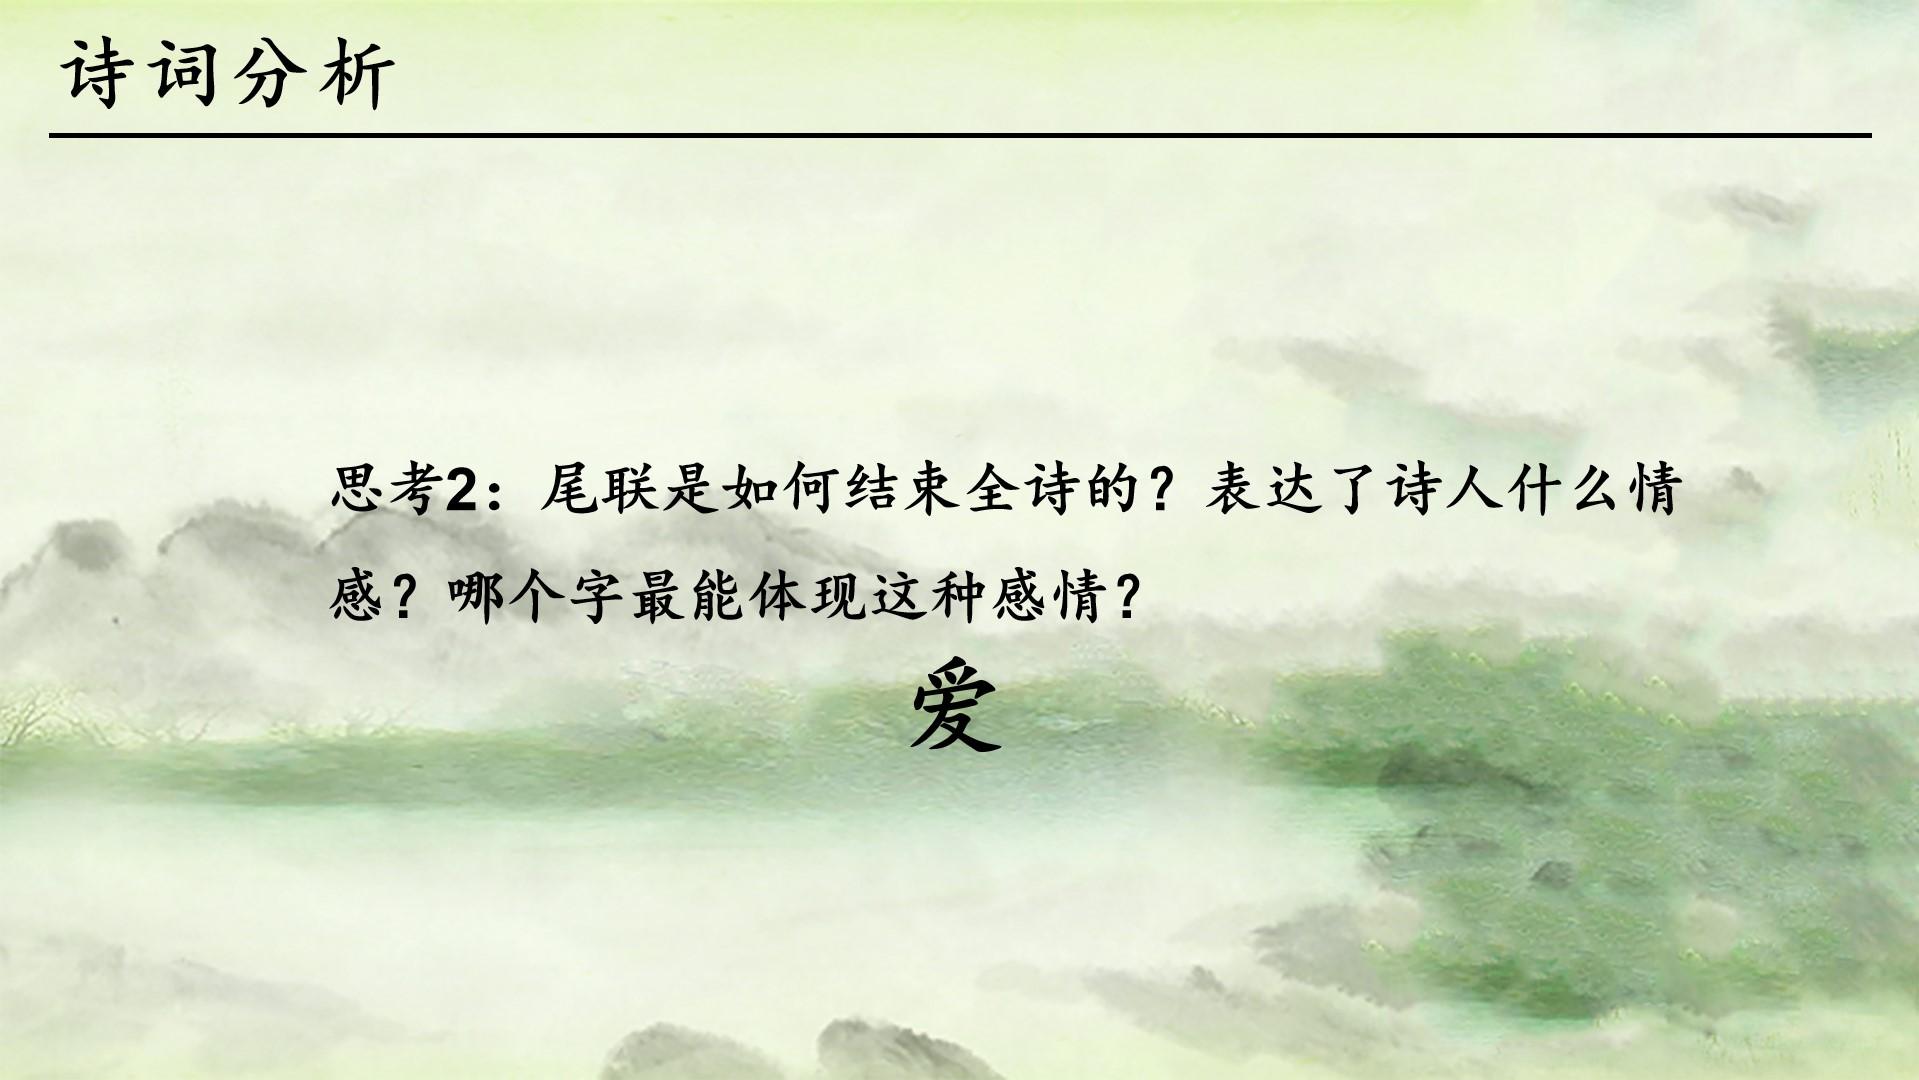 教育教学绿色黑色白色中国风诗人情感感情思考诗词云素材PPT模板1672564882943